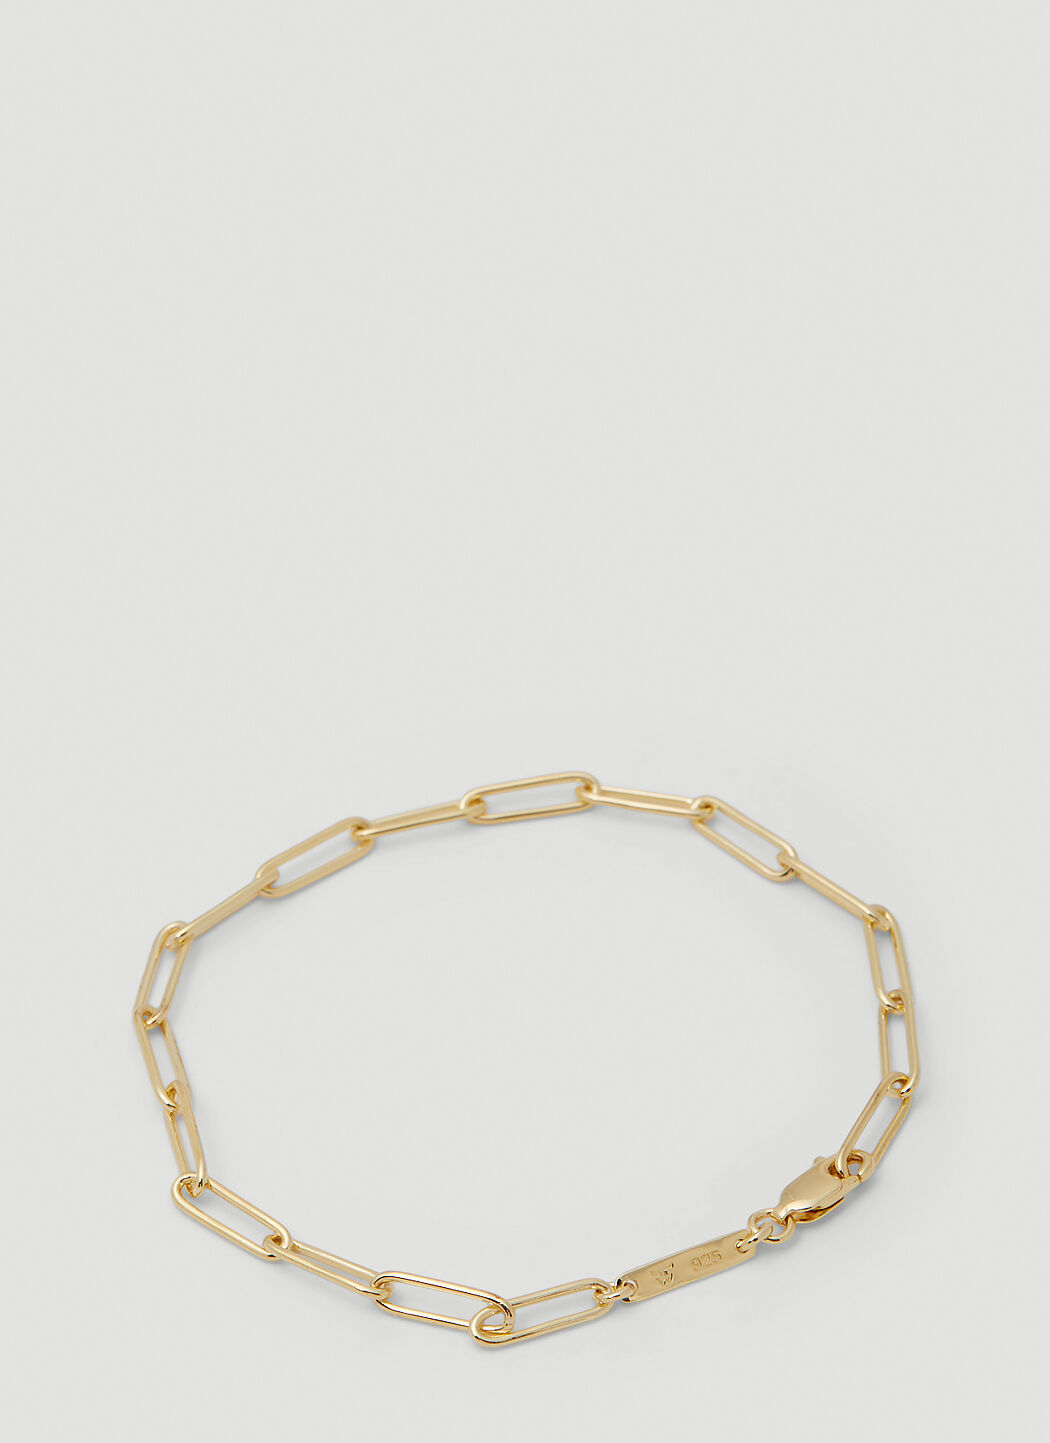 Vivienne Westwood Box Chain Bracelet Gold vvw0154038